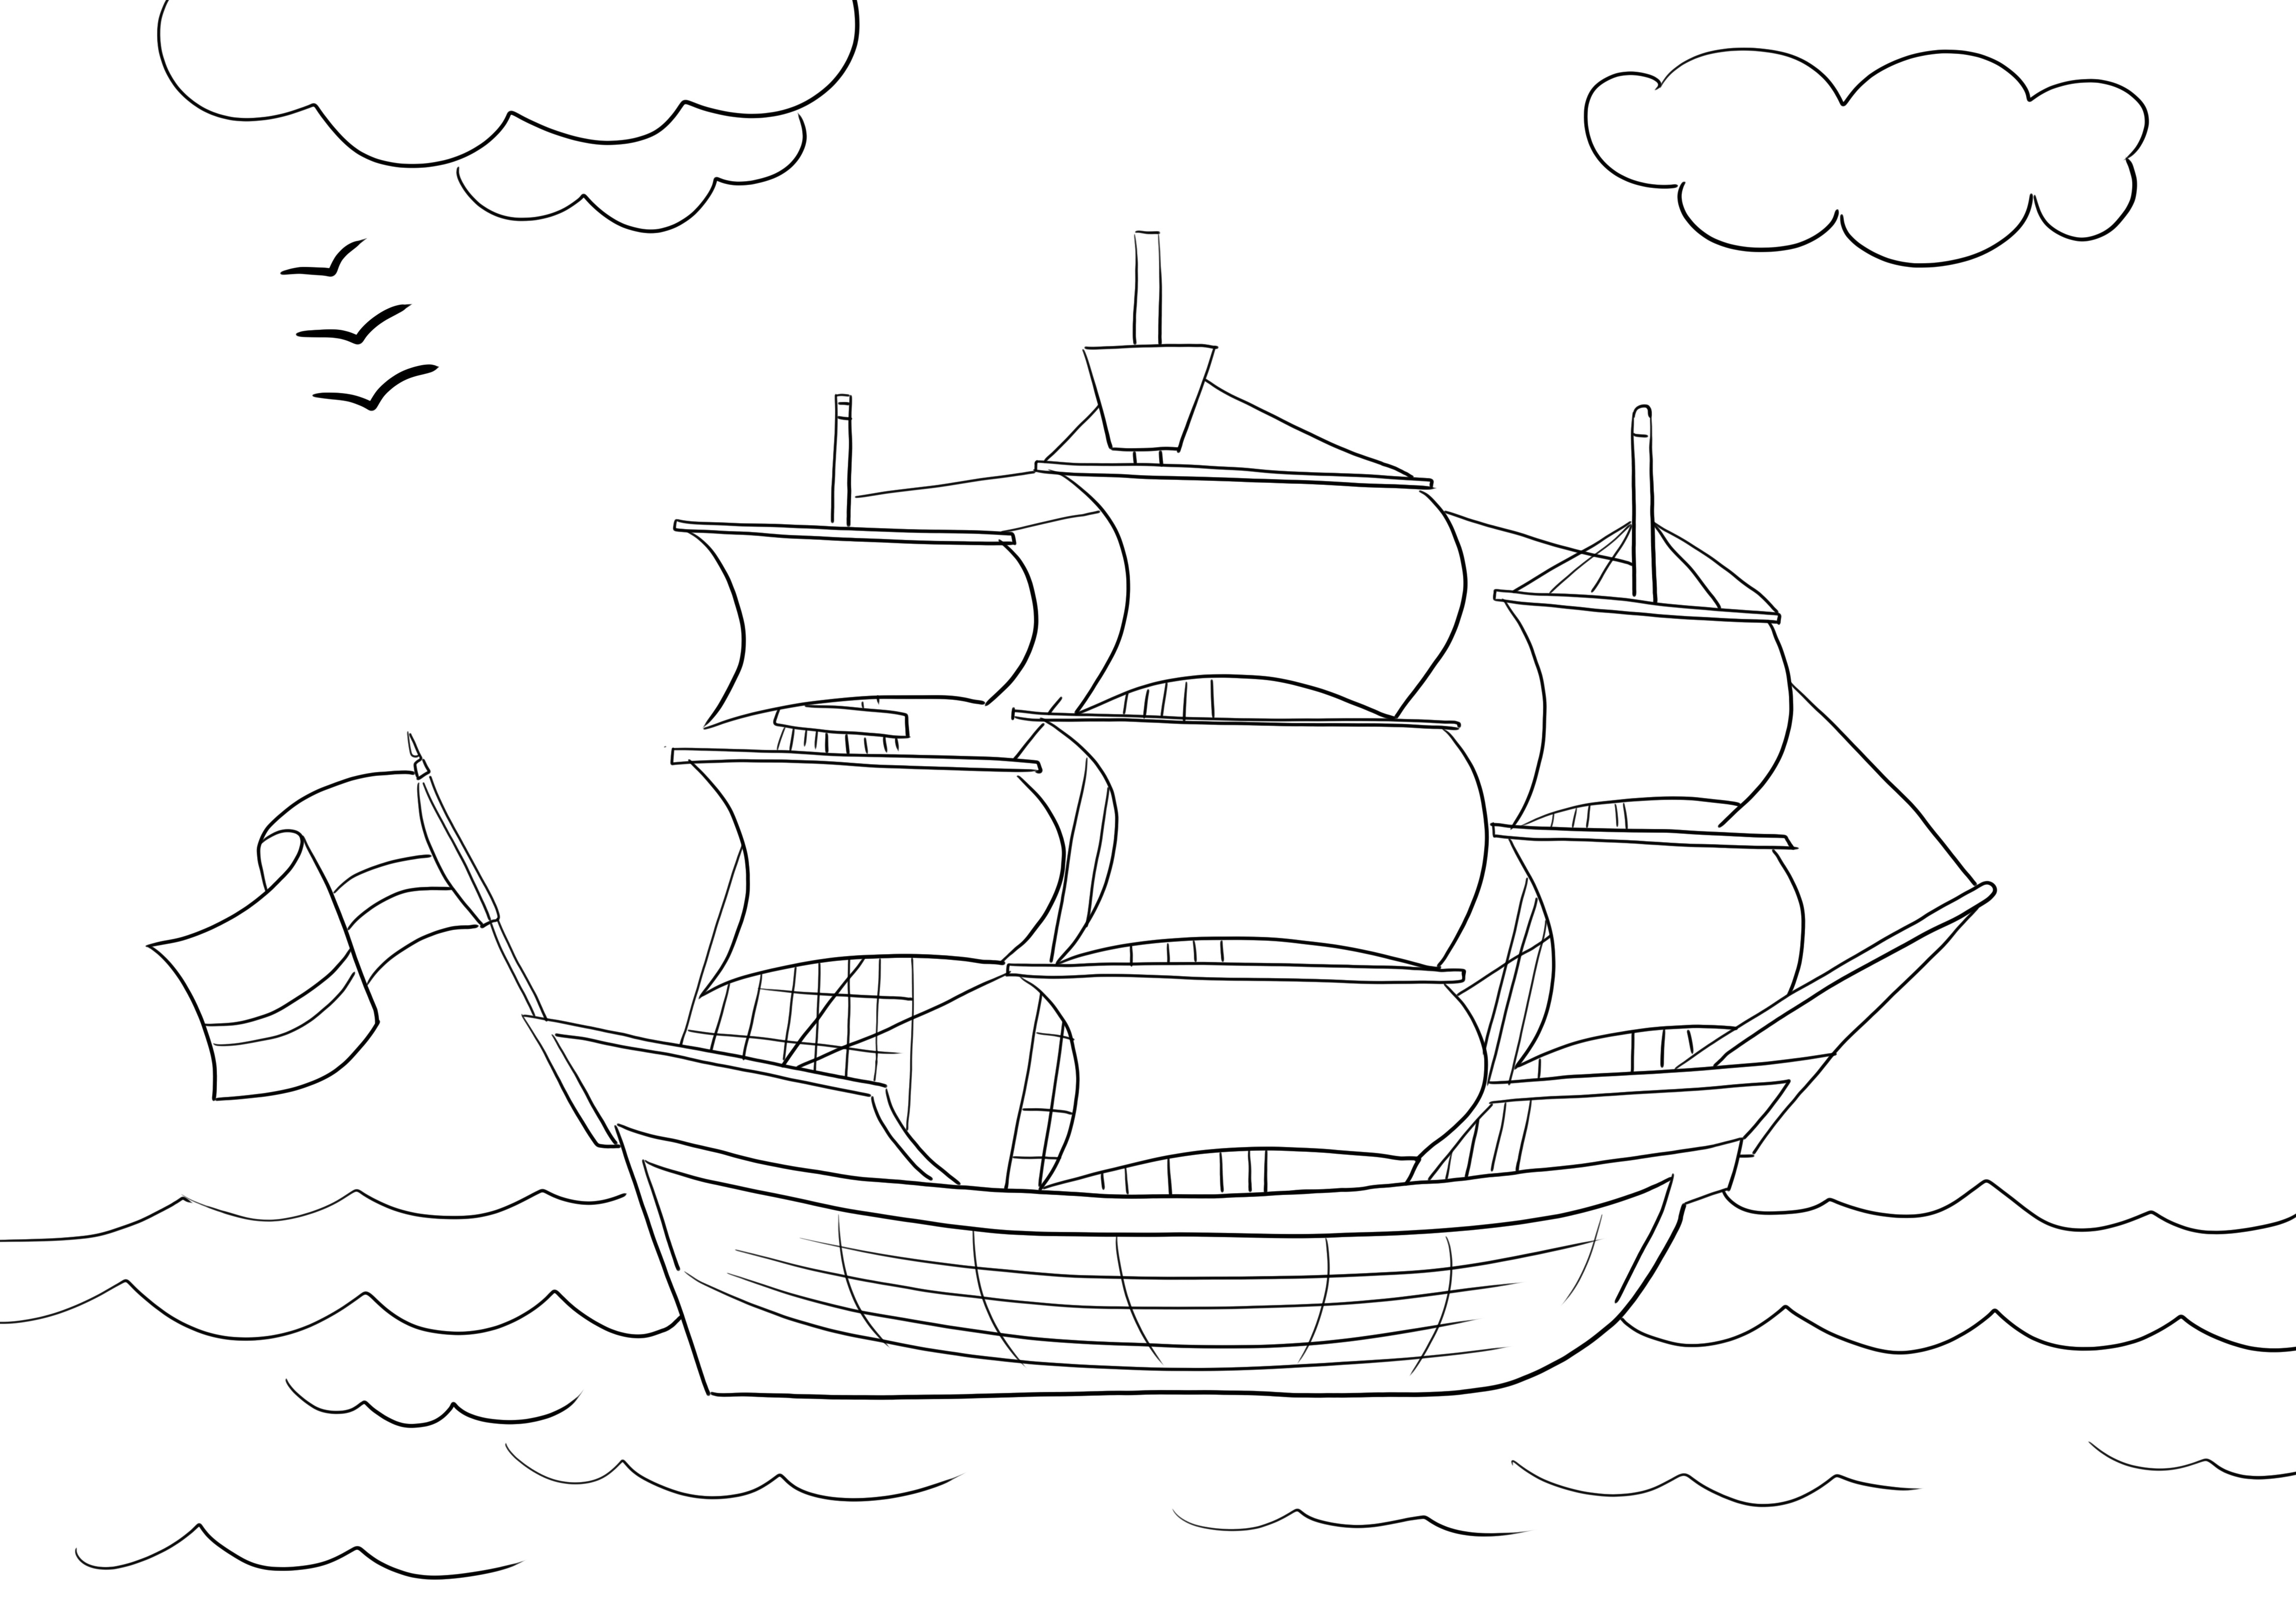 Çocuklar için ücretsiz olarak yazdırabileceğiniz yelkenli boyama resmi